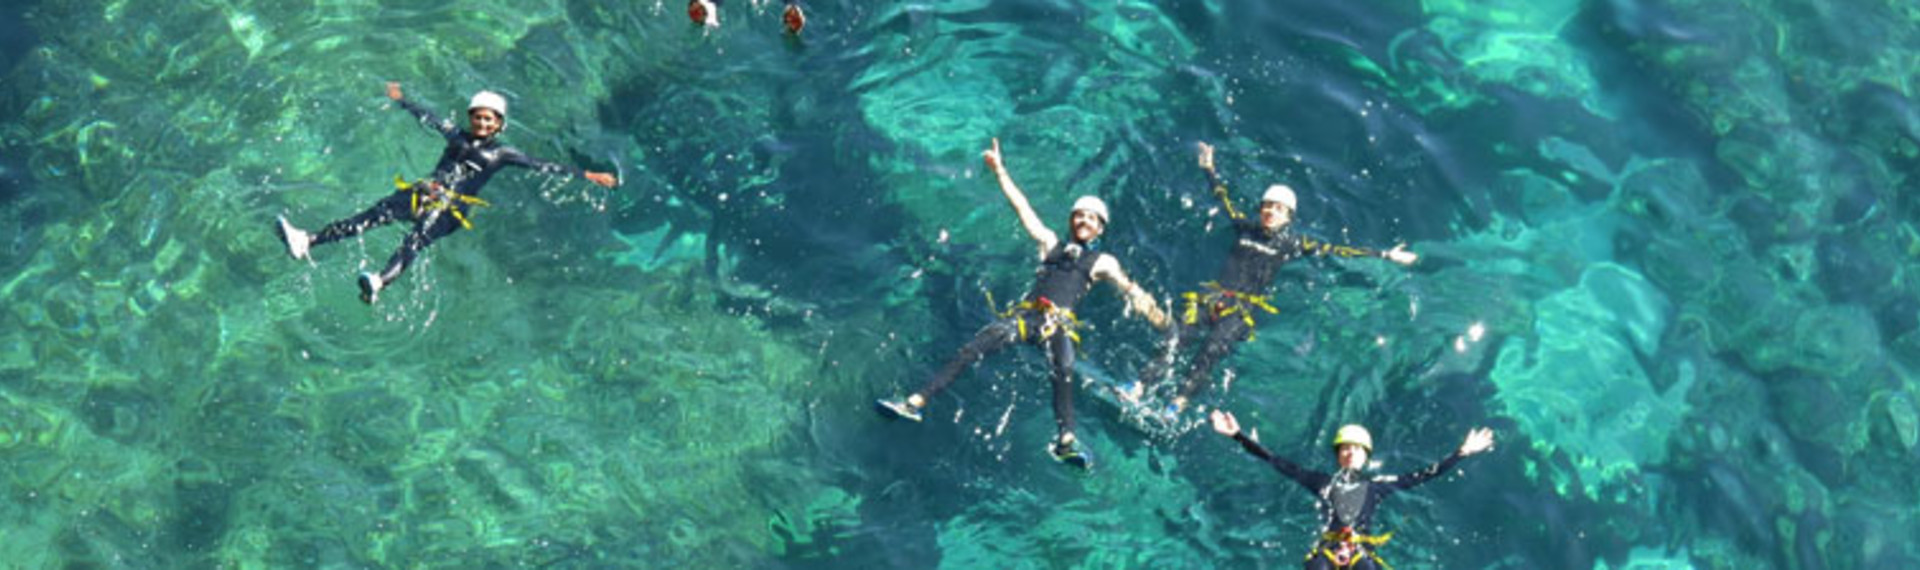 Seabob mieten auf Ibiza | Jetzt mit Pissup Reisen buchen!